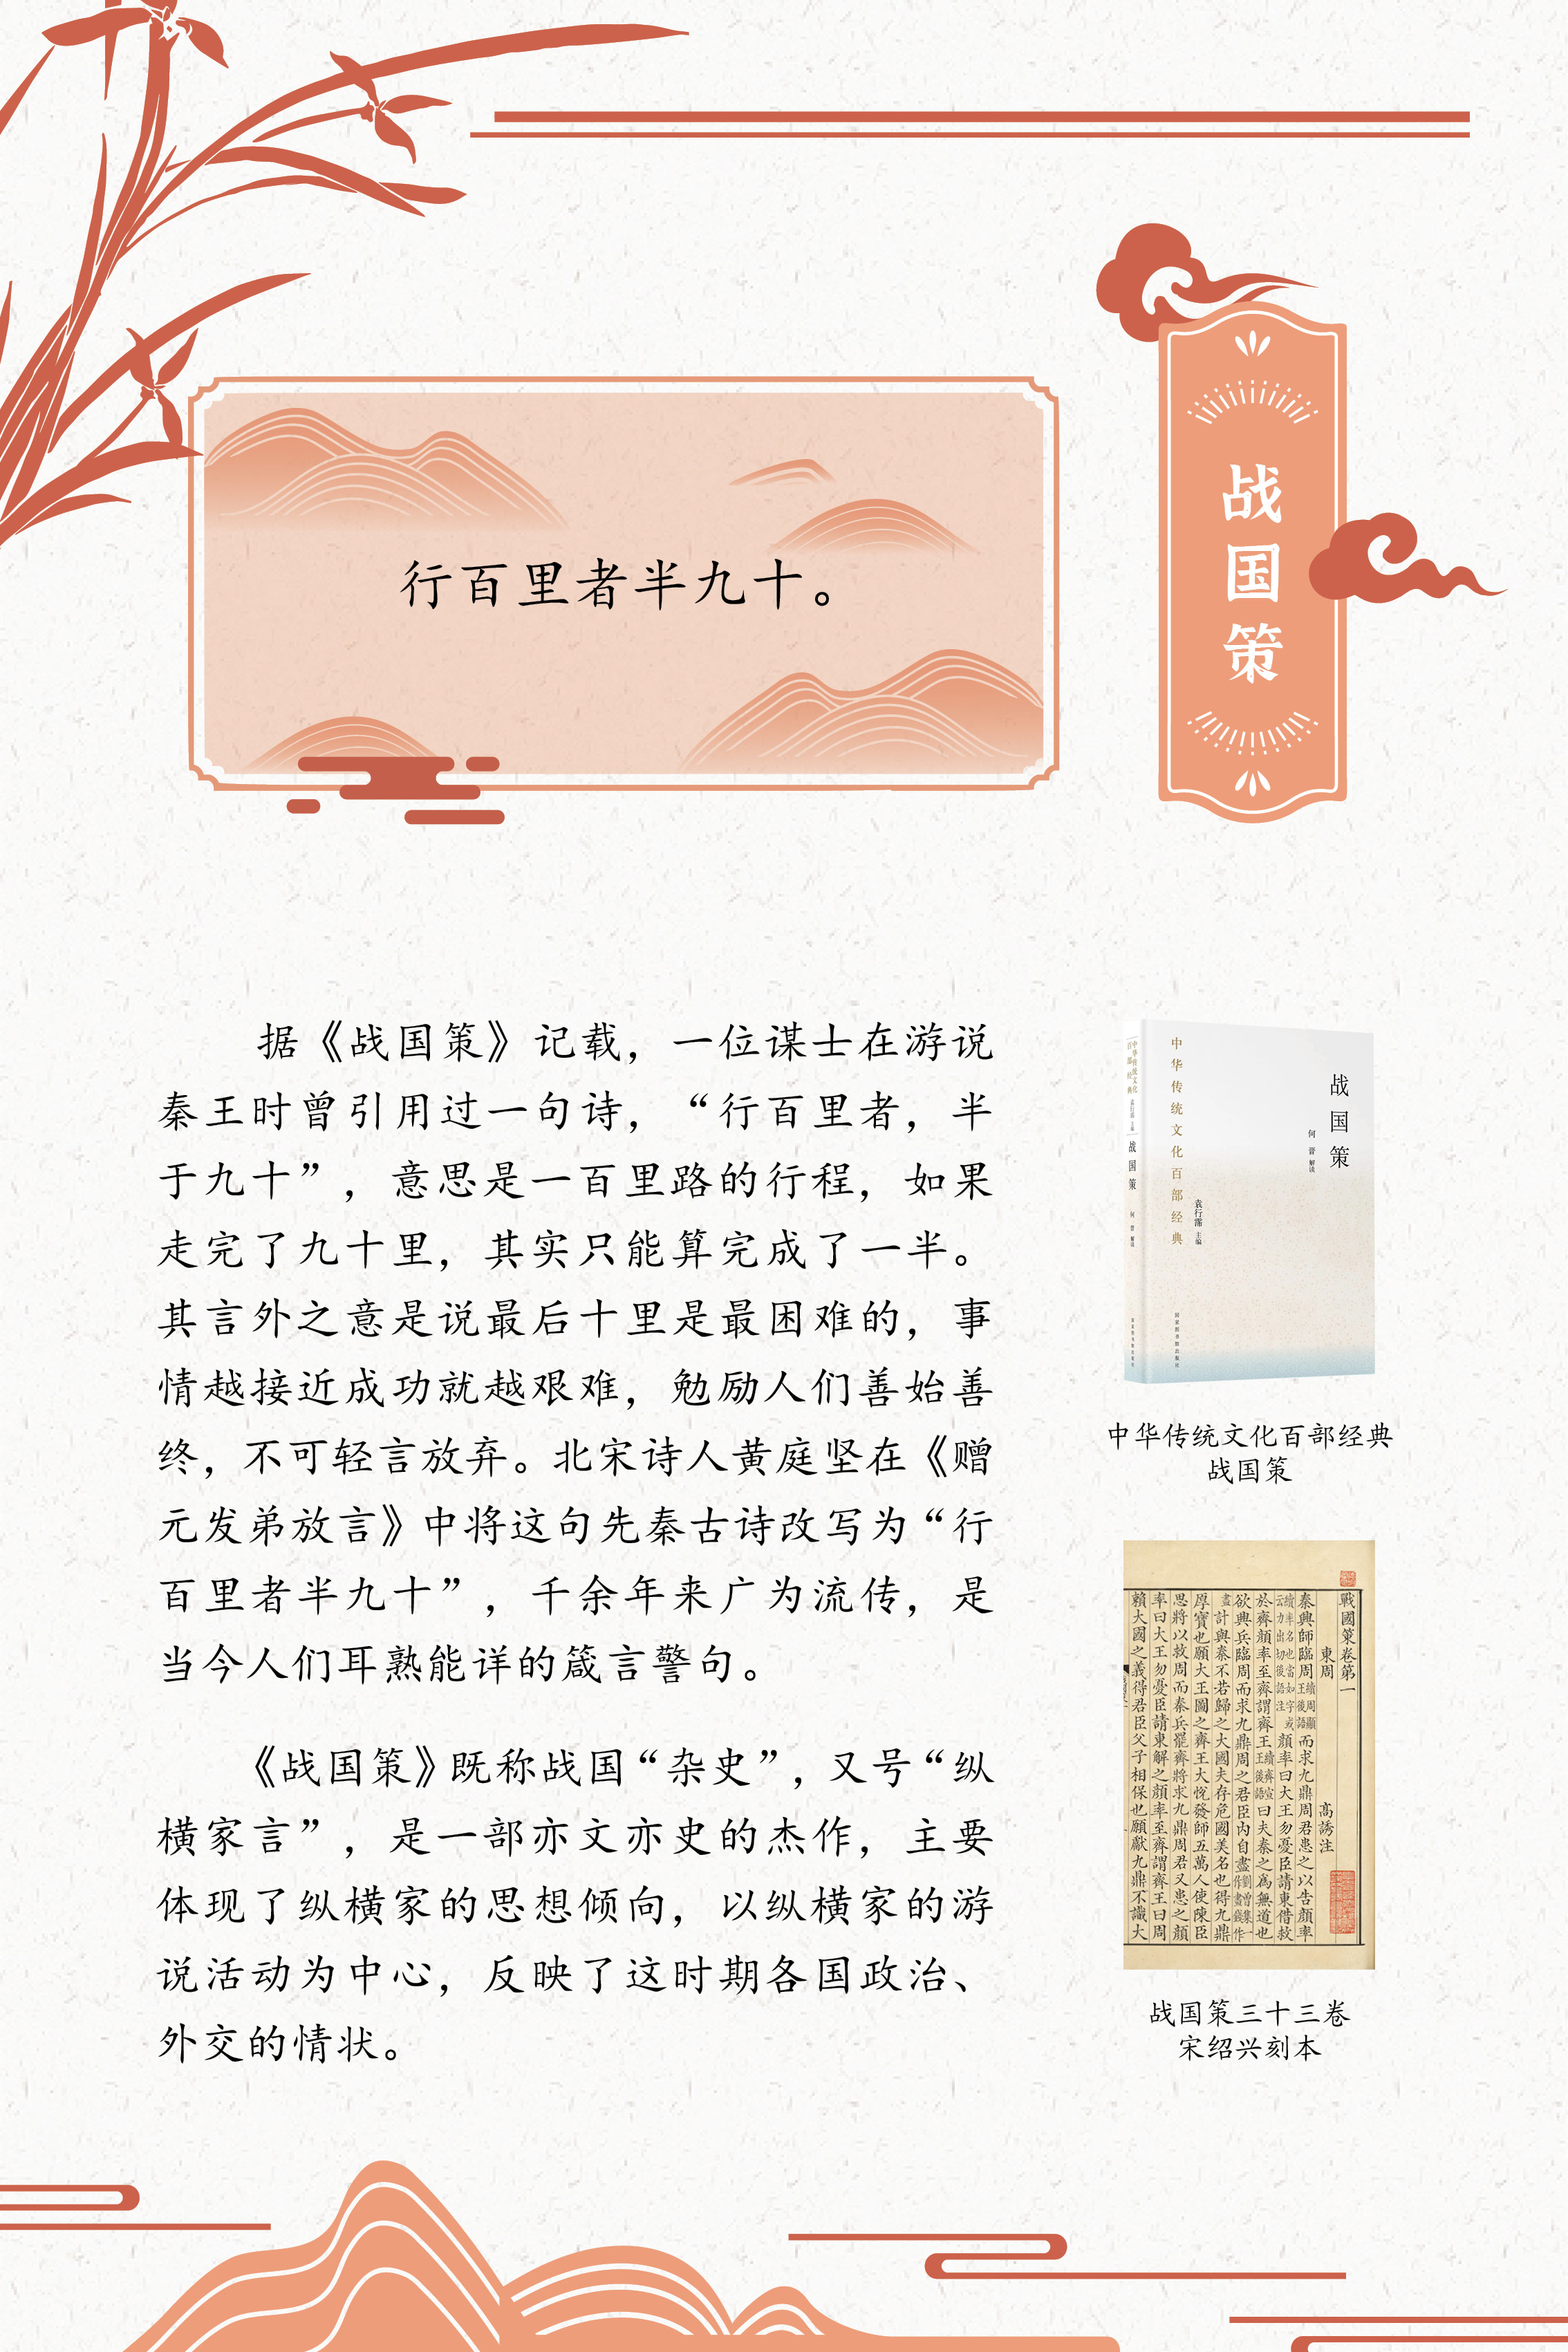 典籍里的中国智慧——《中华传统文化百部经典》阅读推广展_图16